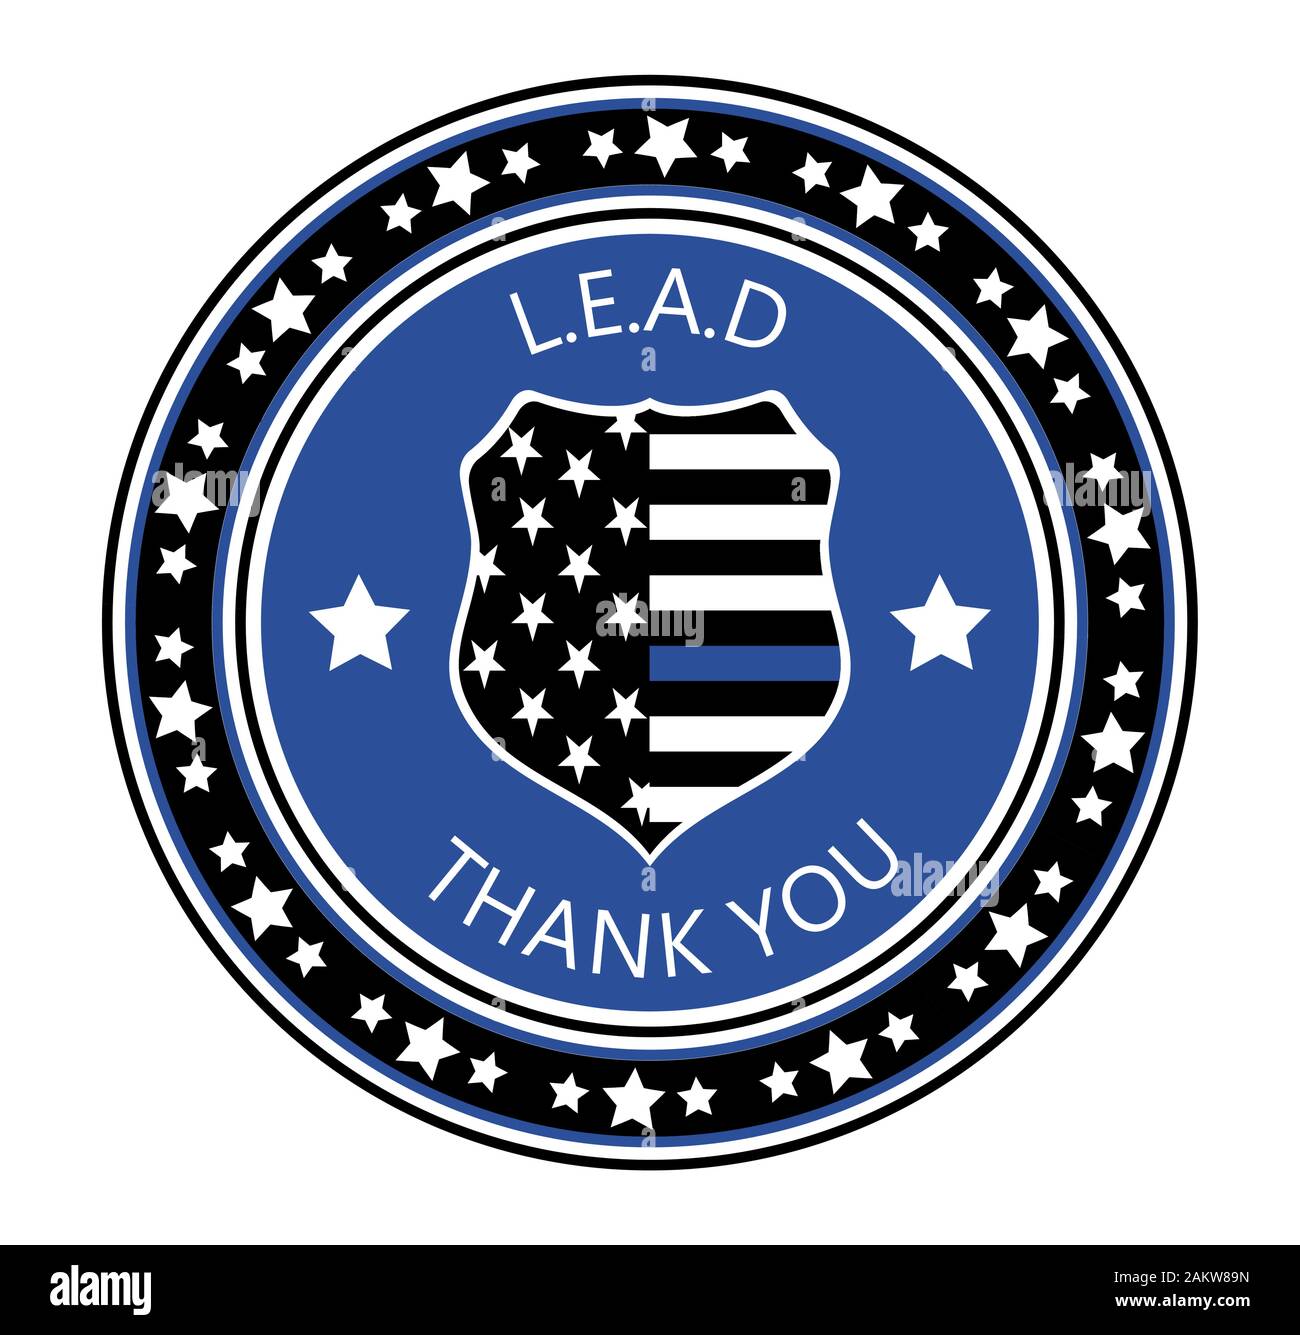 Día de Reconocimiento a la aplicación de la Ley es celebreted en EE.UU. el 9 de enero de cada año. La policía shild con bandera estadounidense y L.E.A.D. lema. Vector plana con estrellas Ilustración del Vector